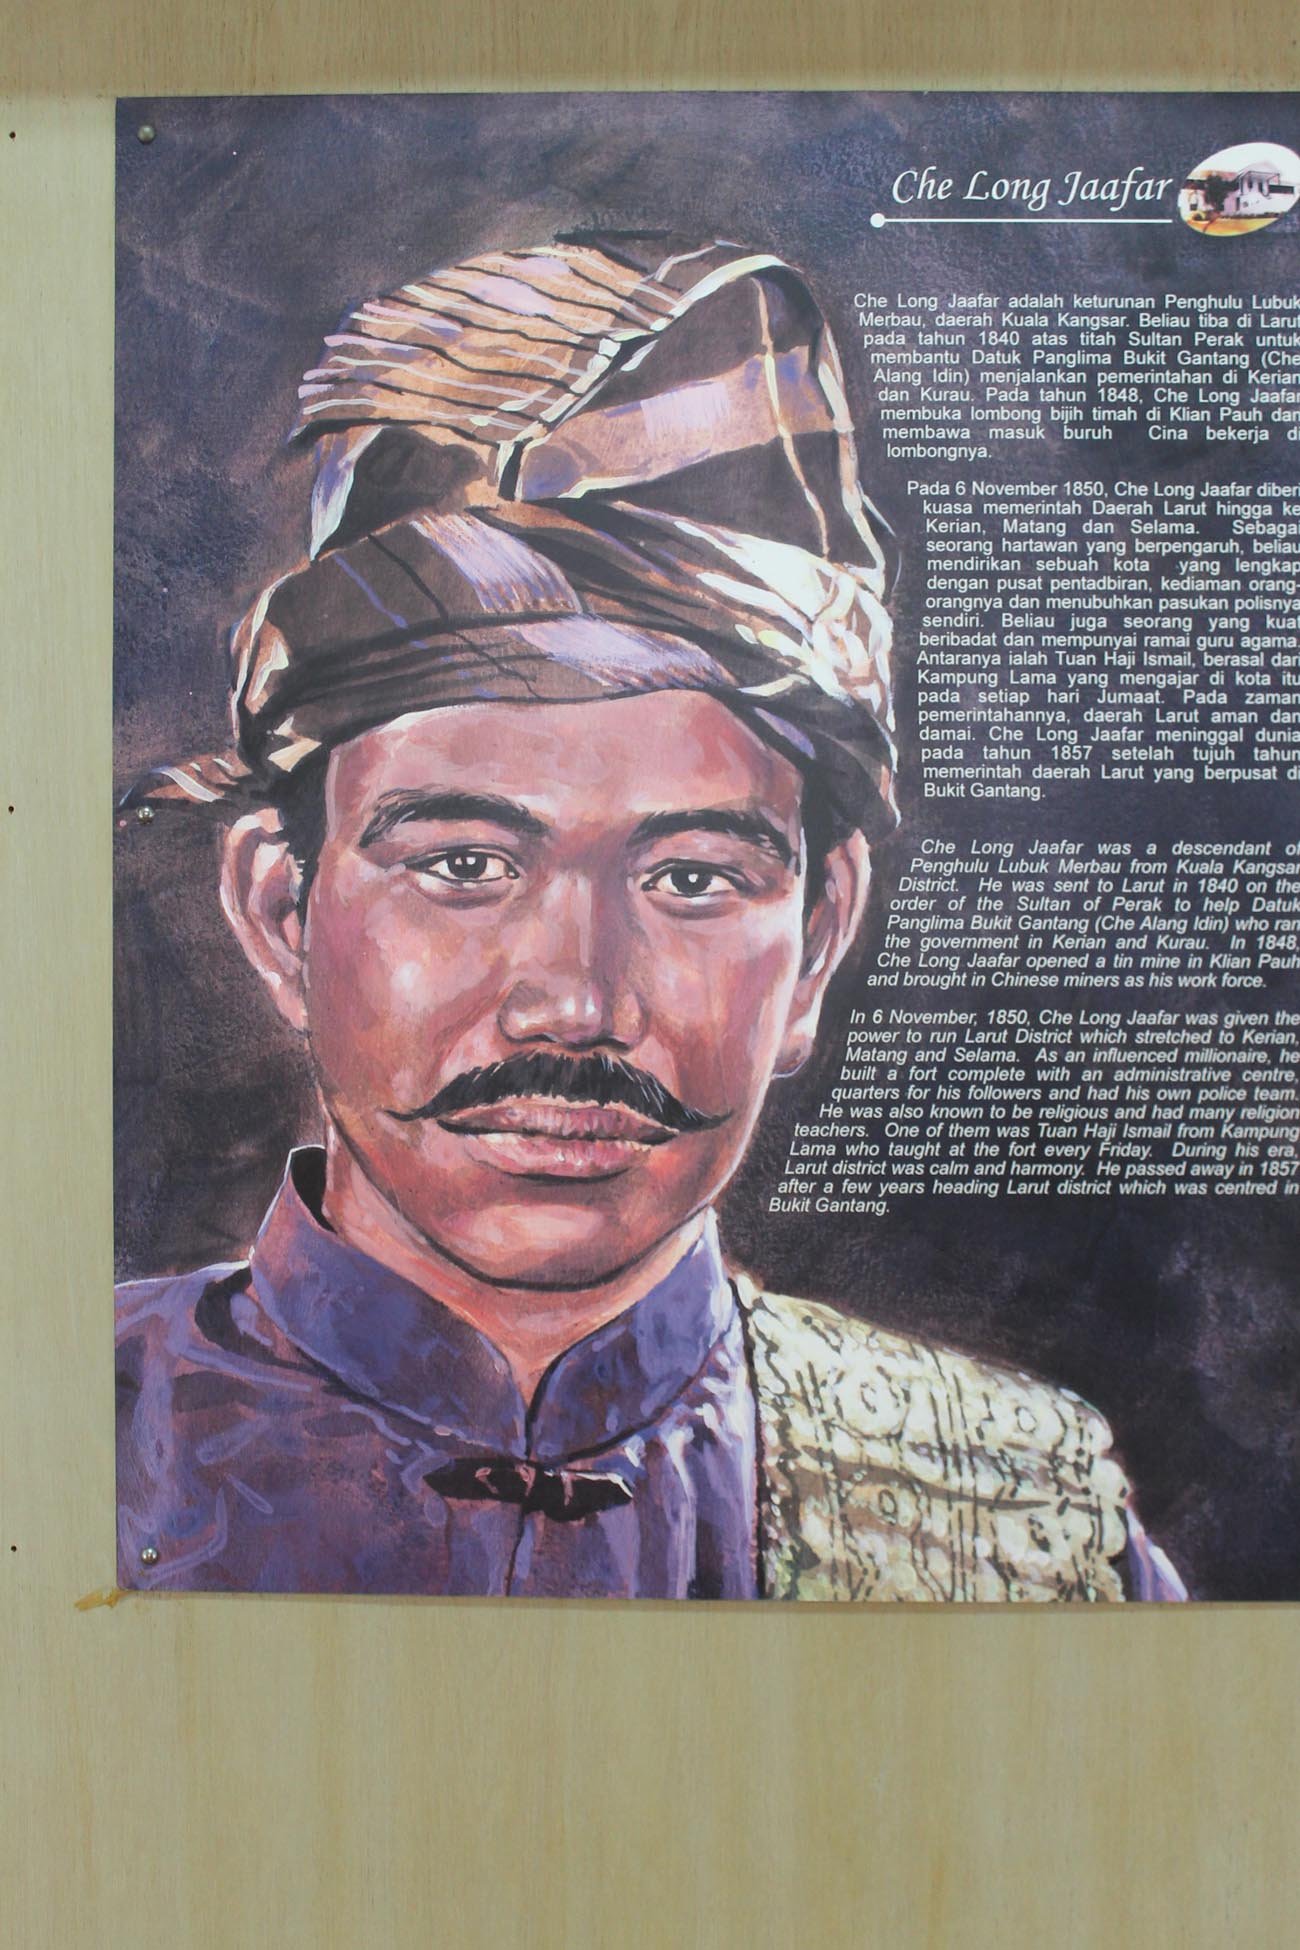 马来土酋隆查化是在拉律发现锡苗的第一人，进而开启了太平的发展历史，如今在马登博物馆仍记录著隆查化的各种事迹。